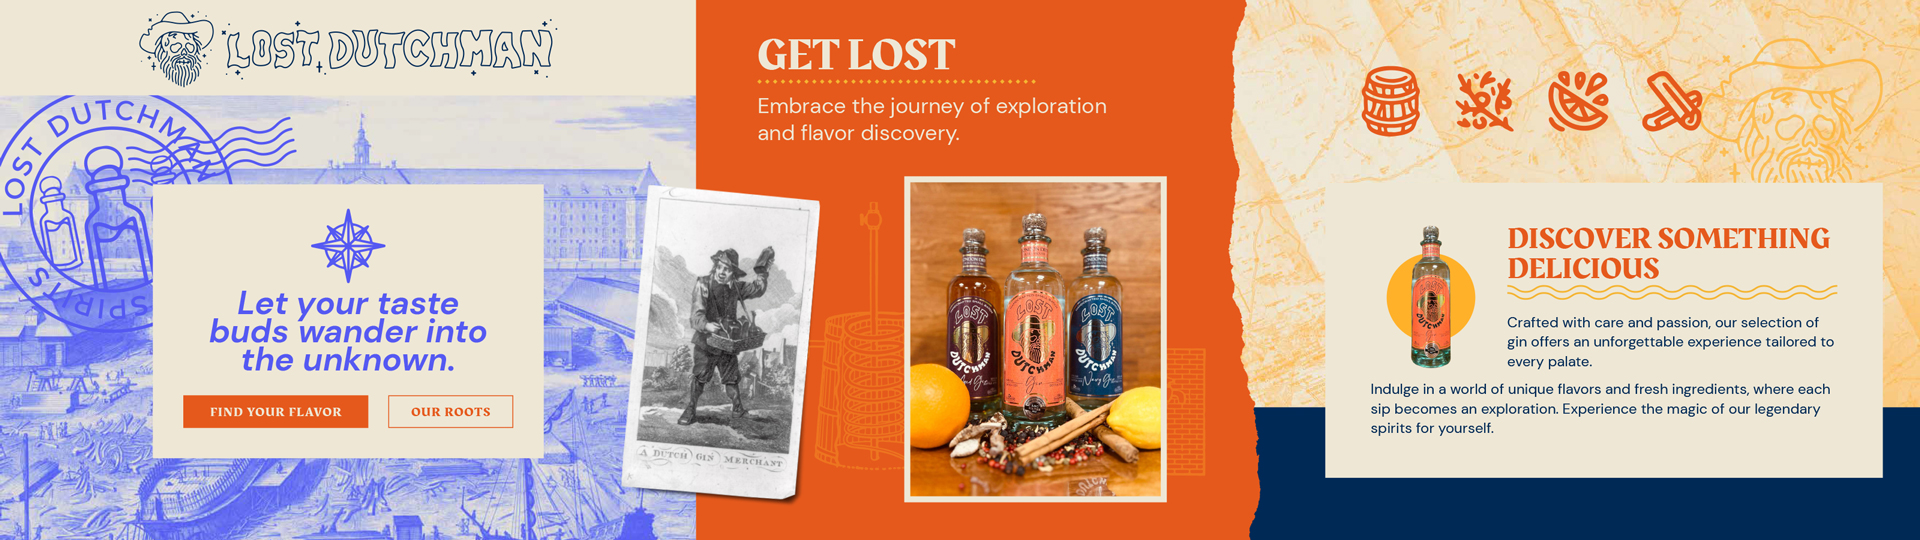 Lost Dutchman Spirits - Brand Stylescape